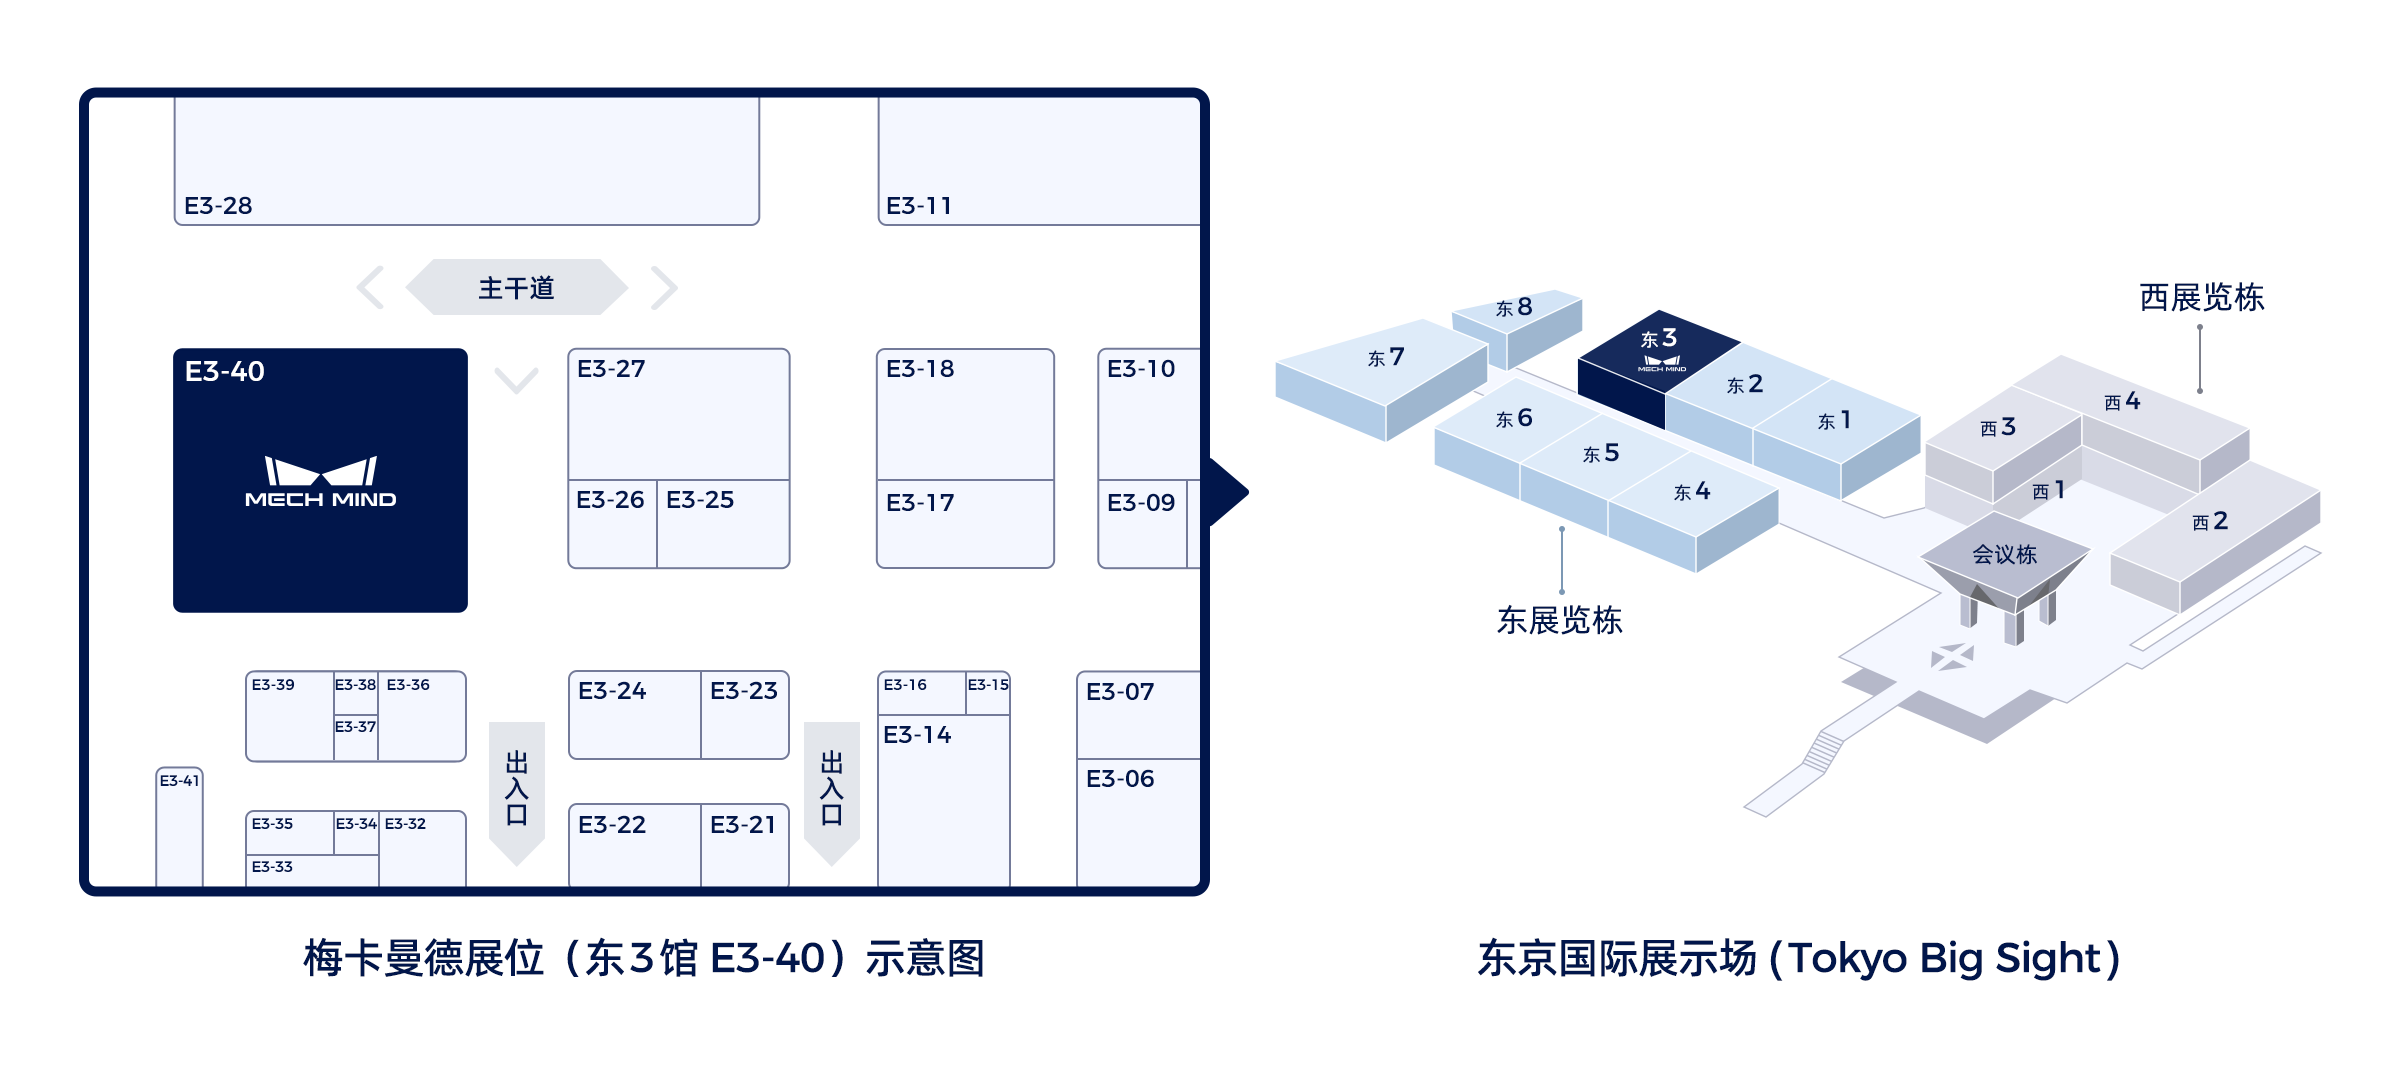 相约东京，梅卡曼德将作为参展规模最大的中国企业亮相iREX 2023！